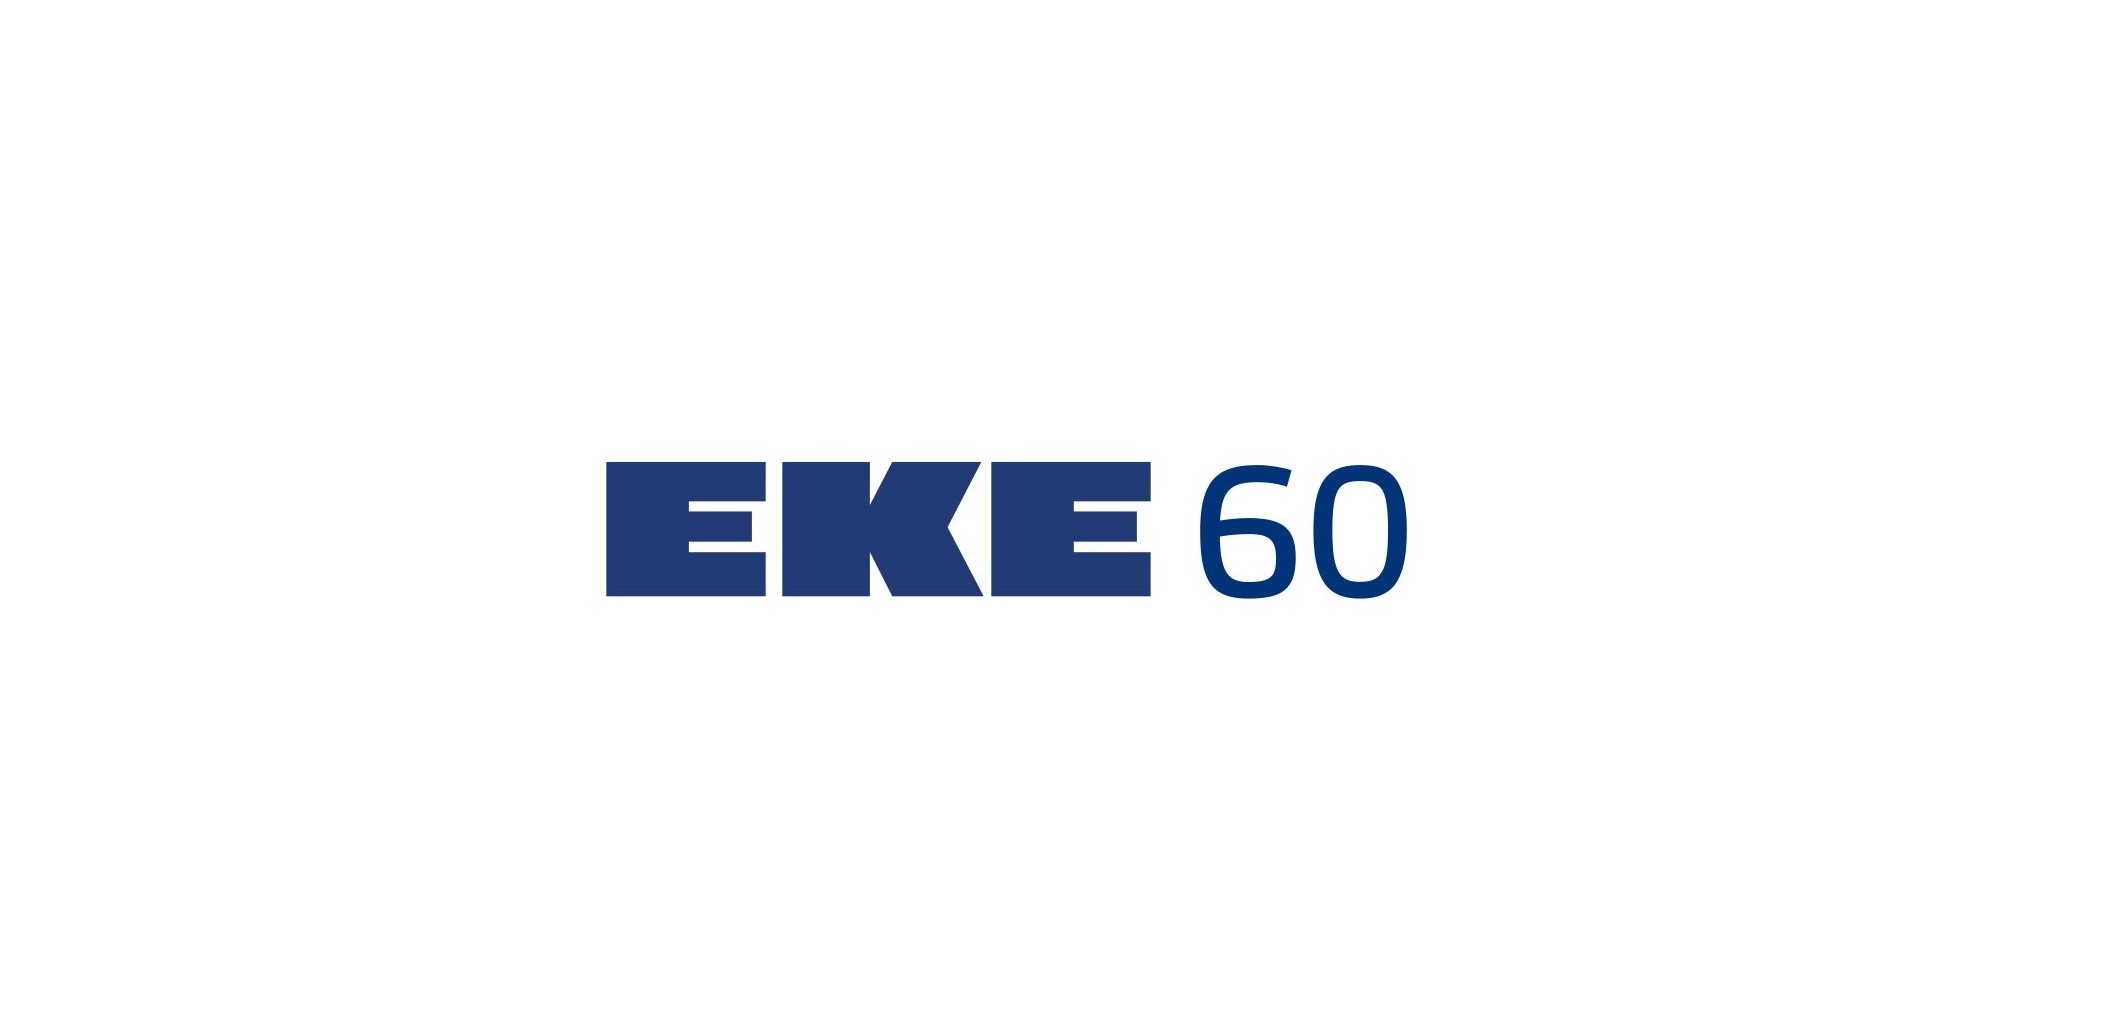 EKE-Yhtiöt - oman tiensä kulkija jo 60 vuotta